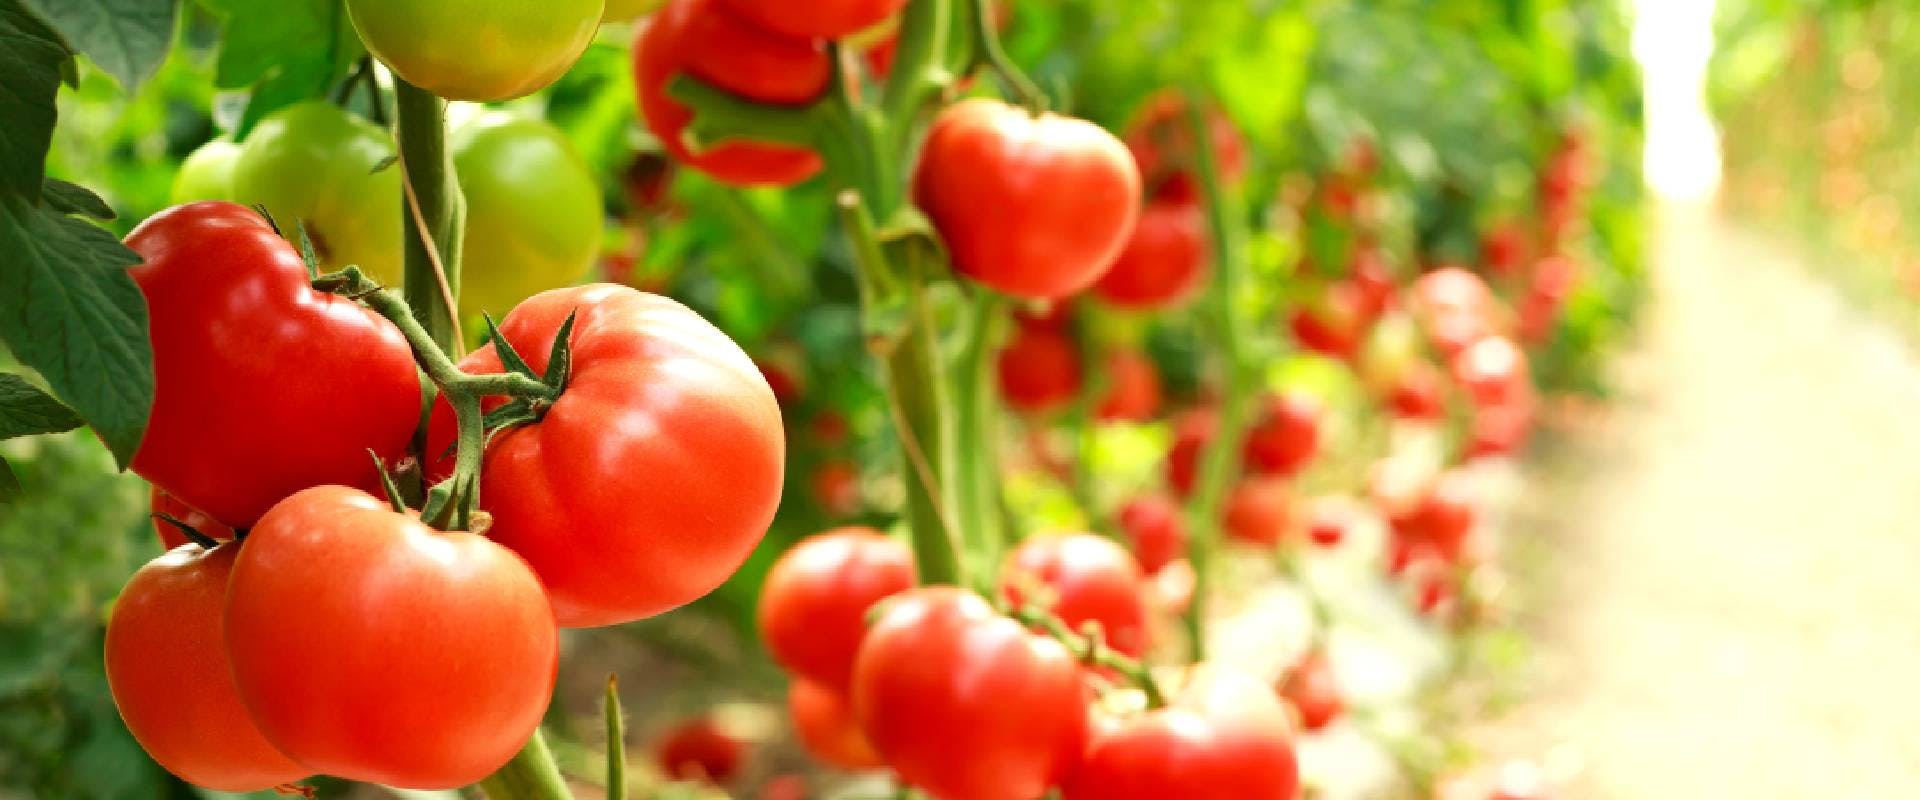 Row of tomato plants